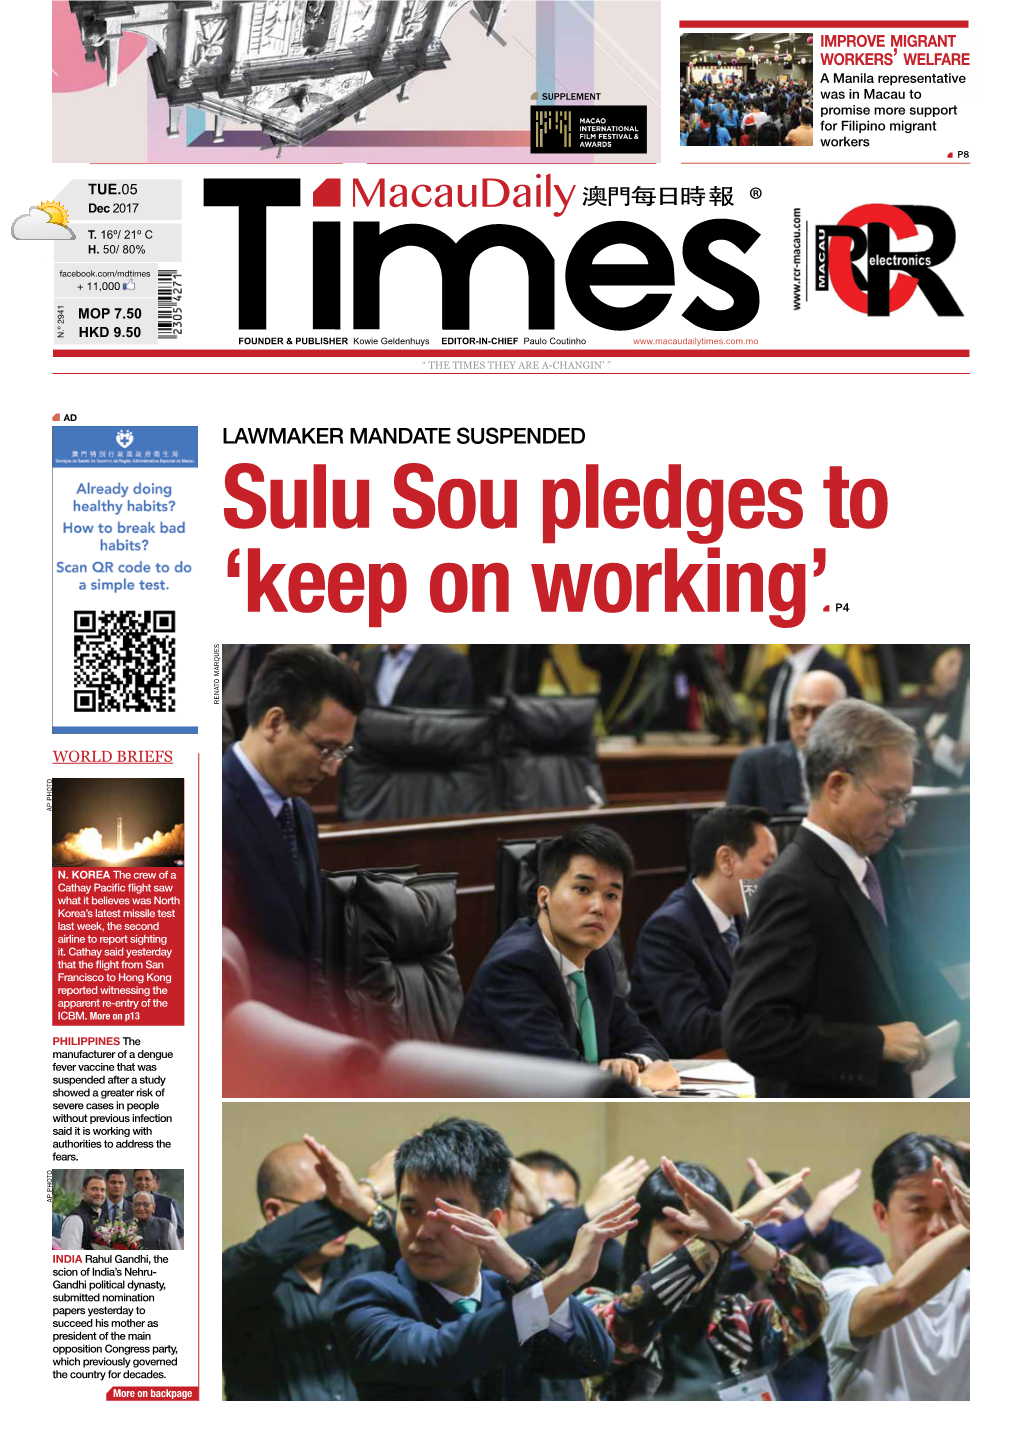 Lawmaker Mandate Suspended Sulu Sou Pledges To